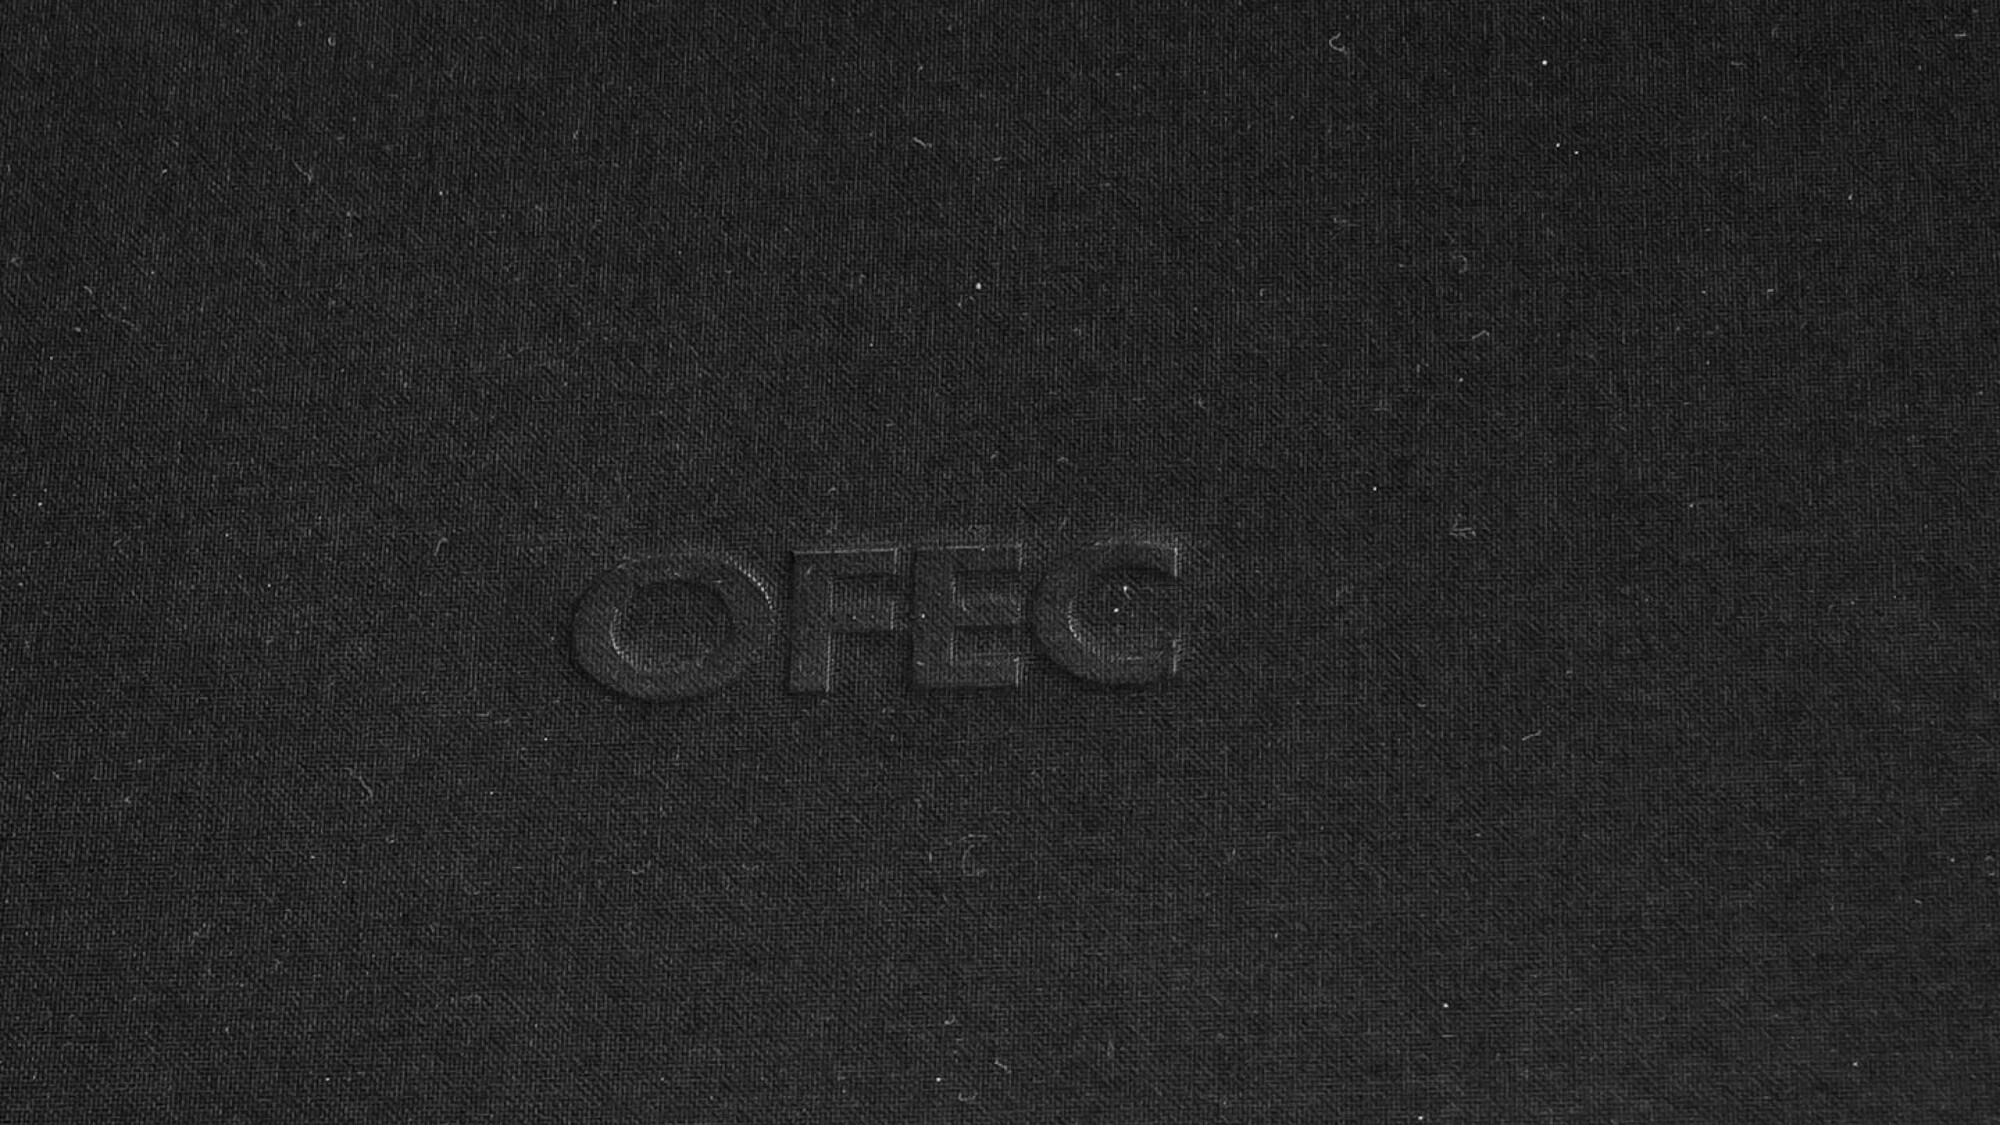 OFEC - AHOGO